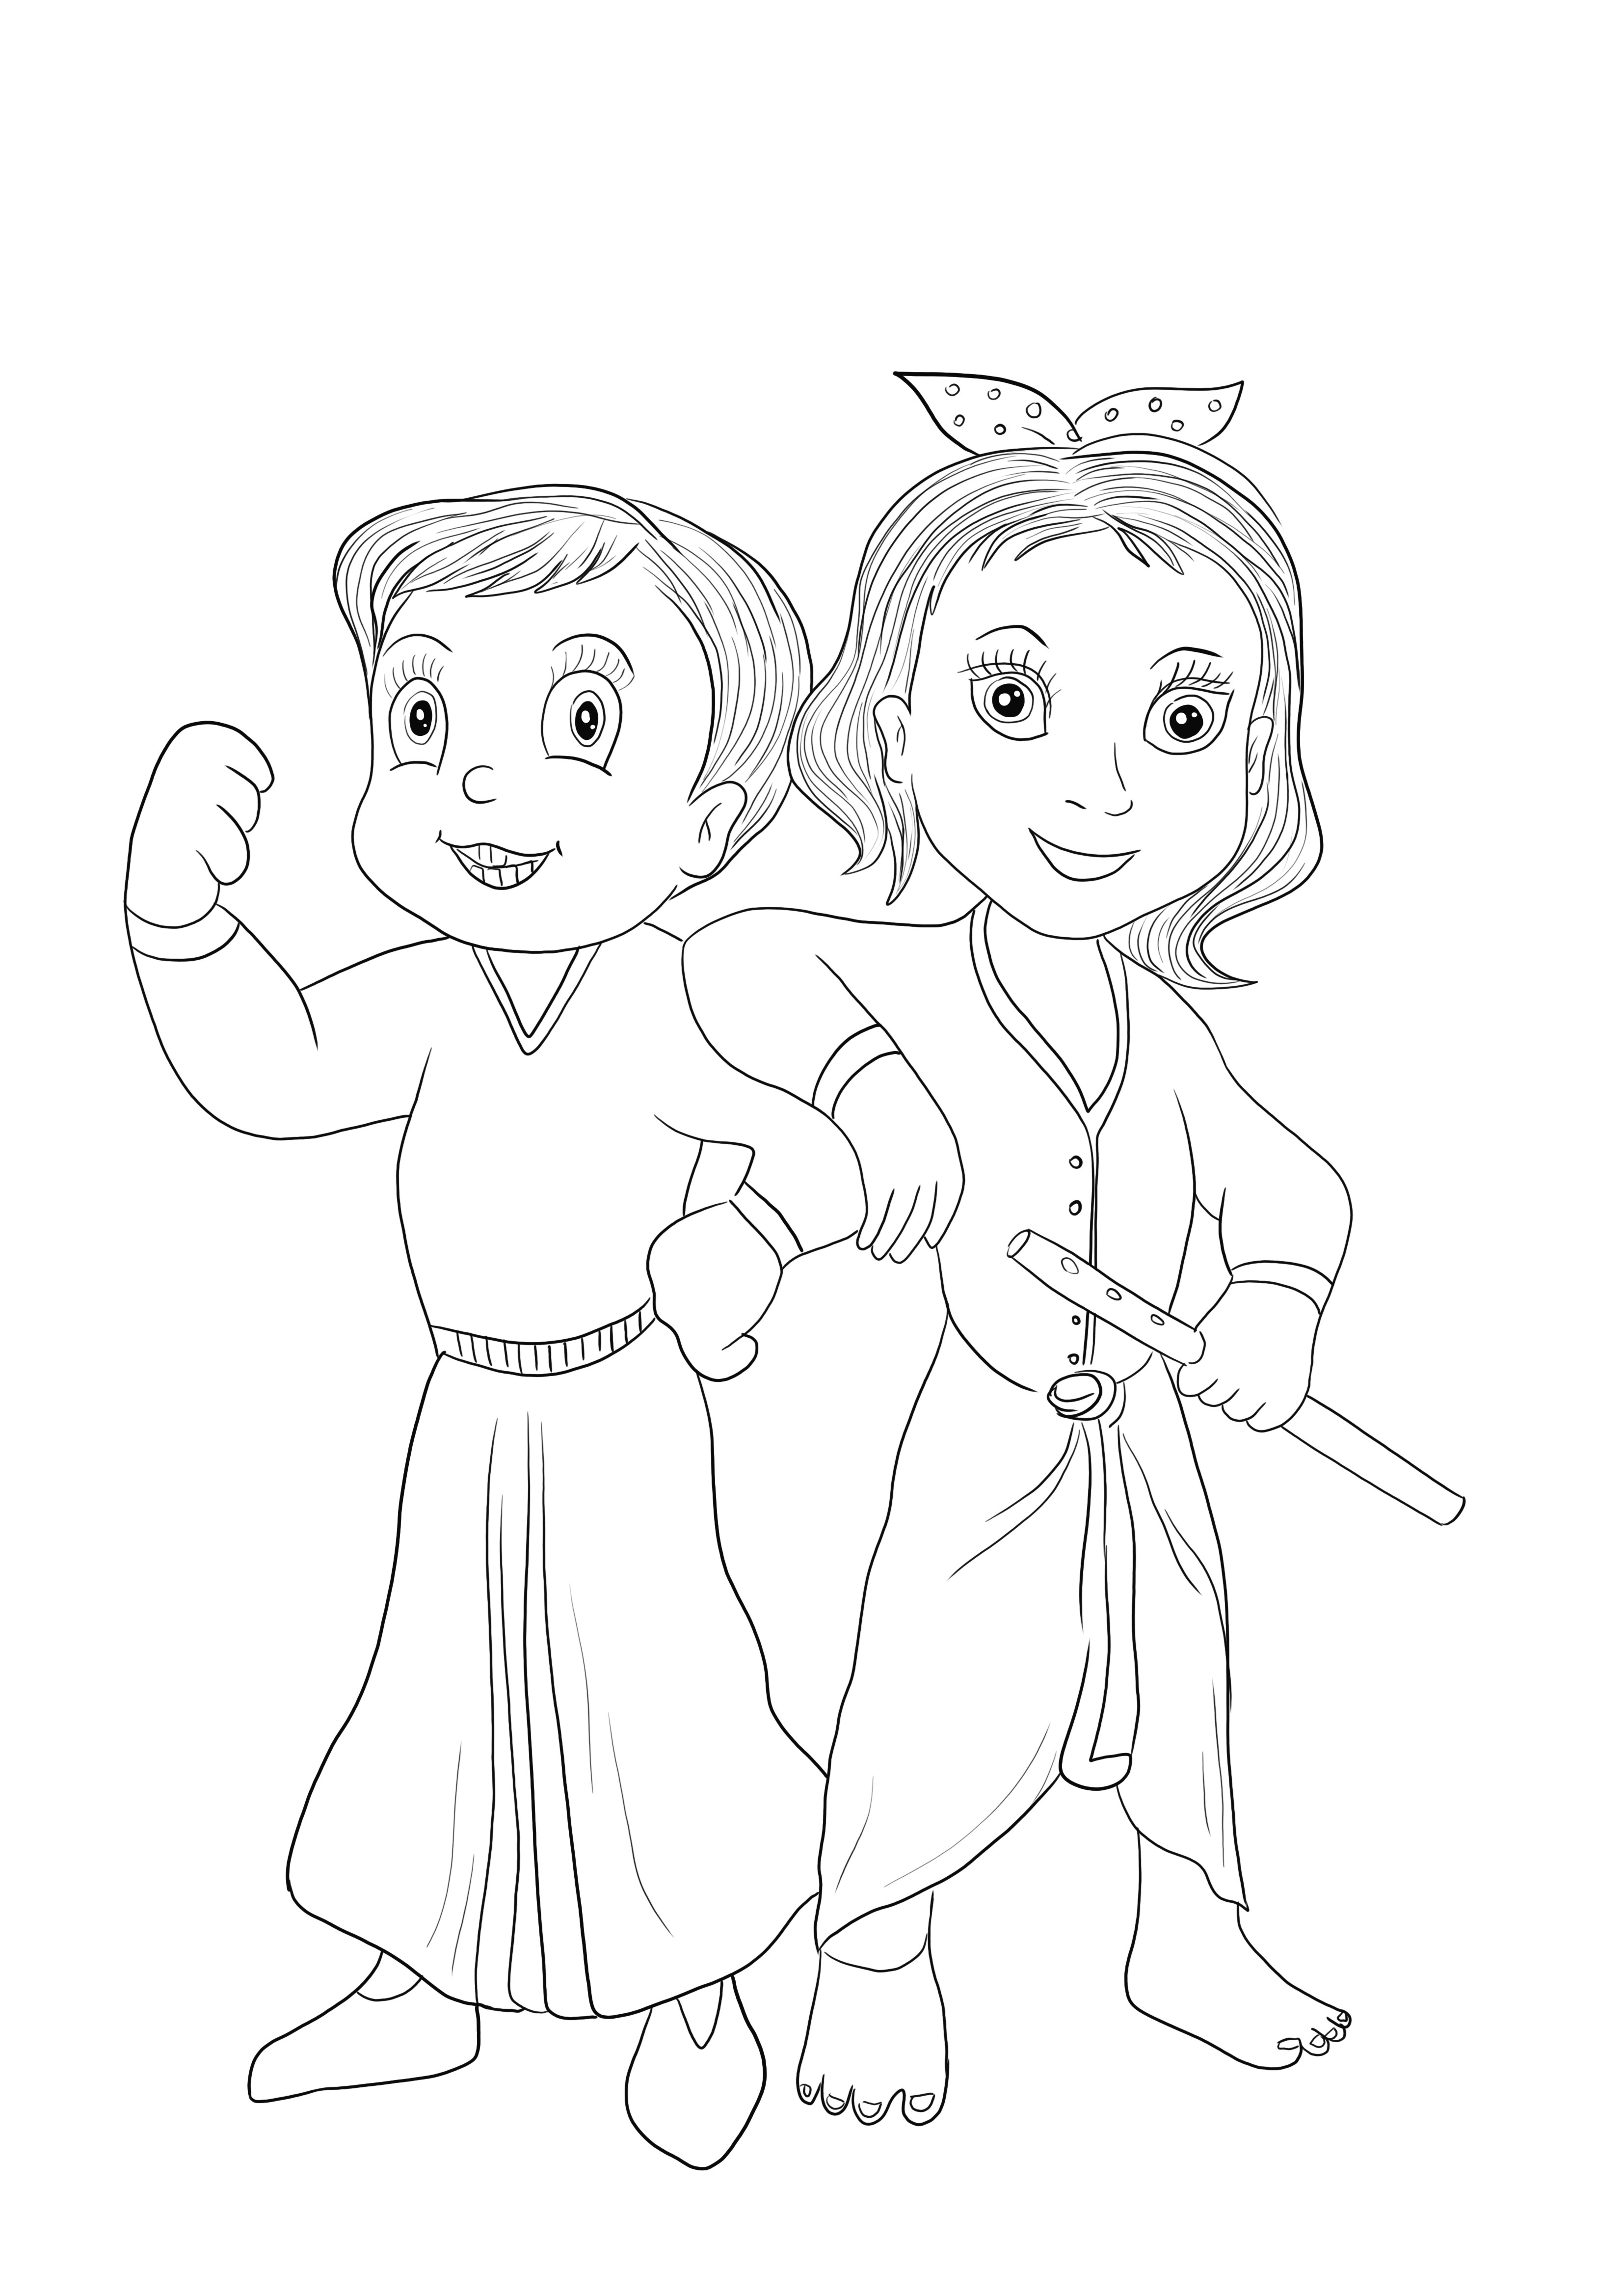 Chhota Bheem y Krishna de Chota Bheem juego gratis para descargar y fácil de colorear